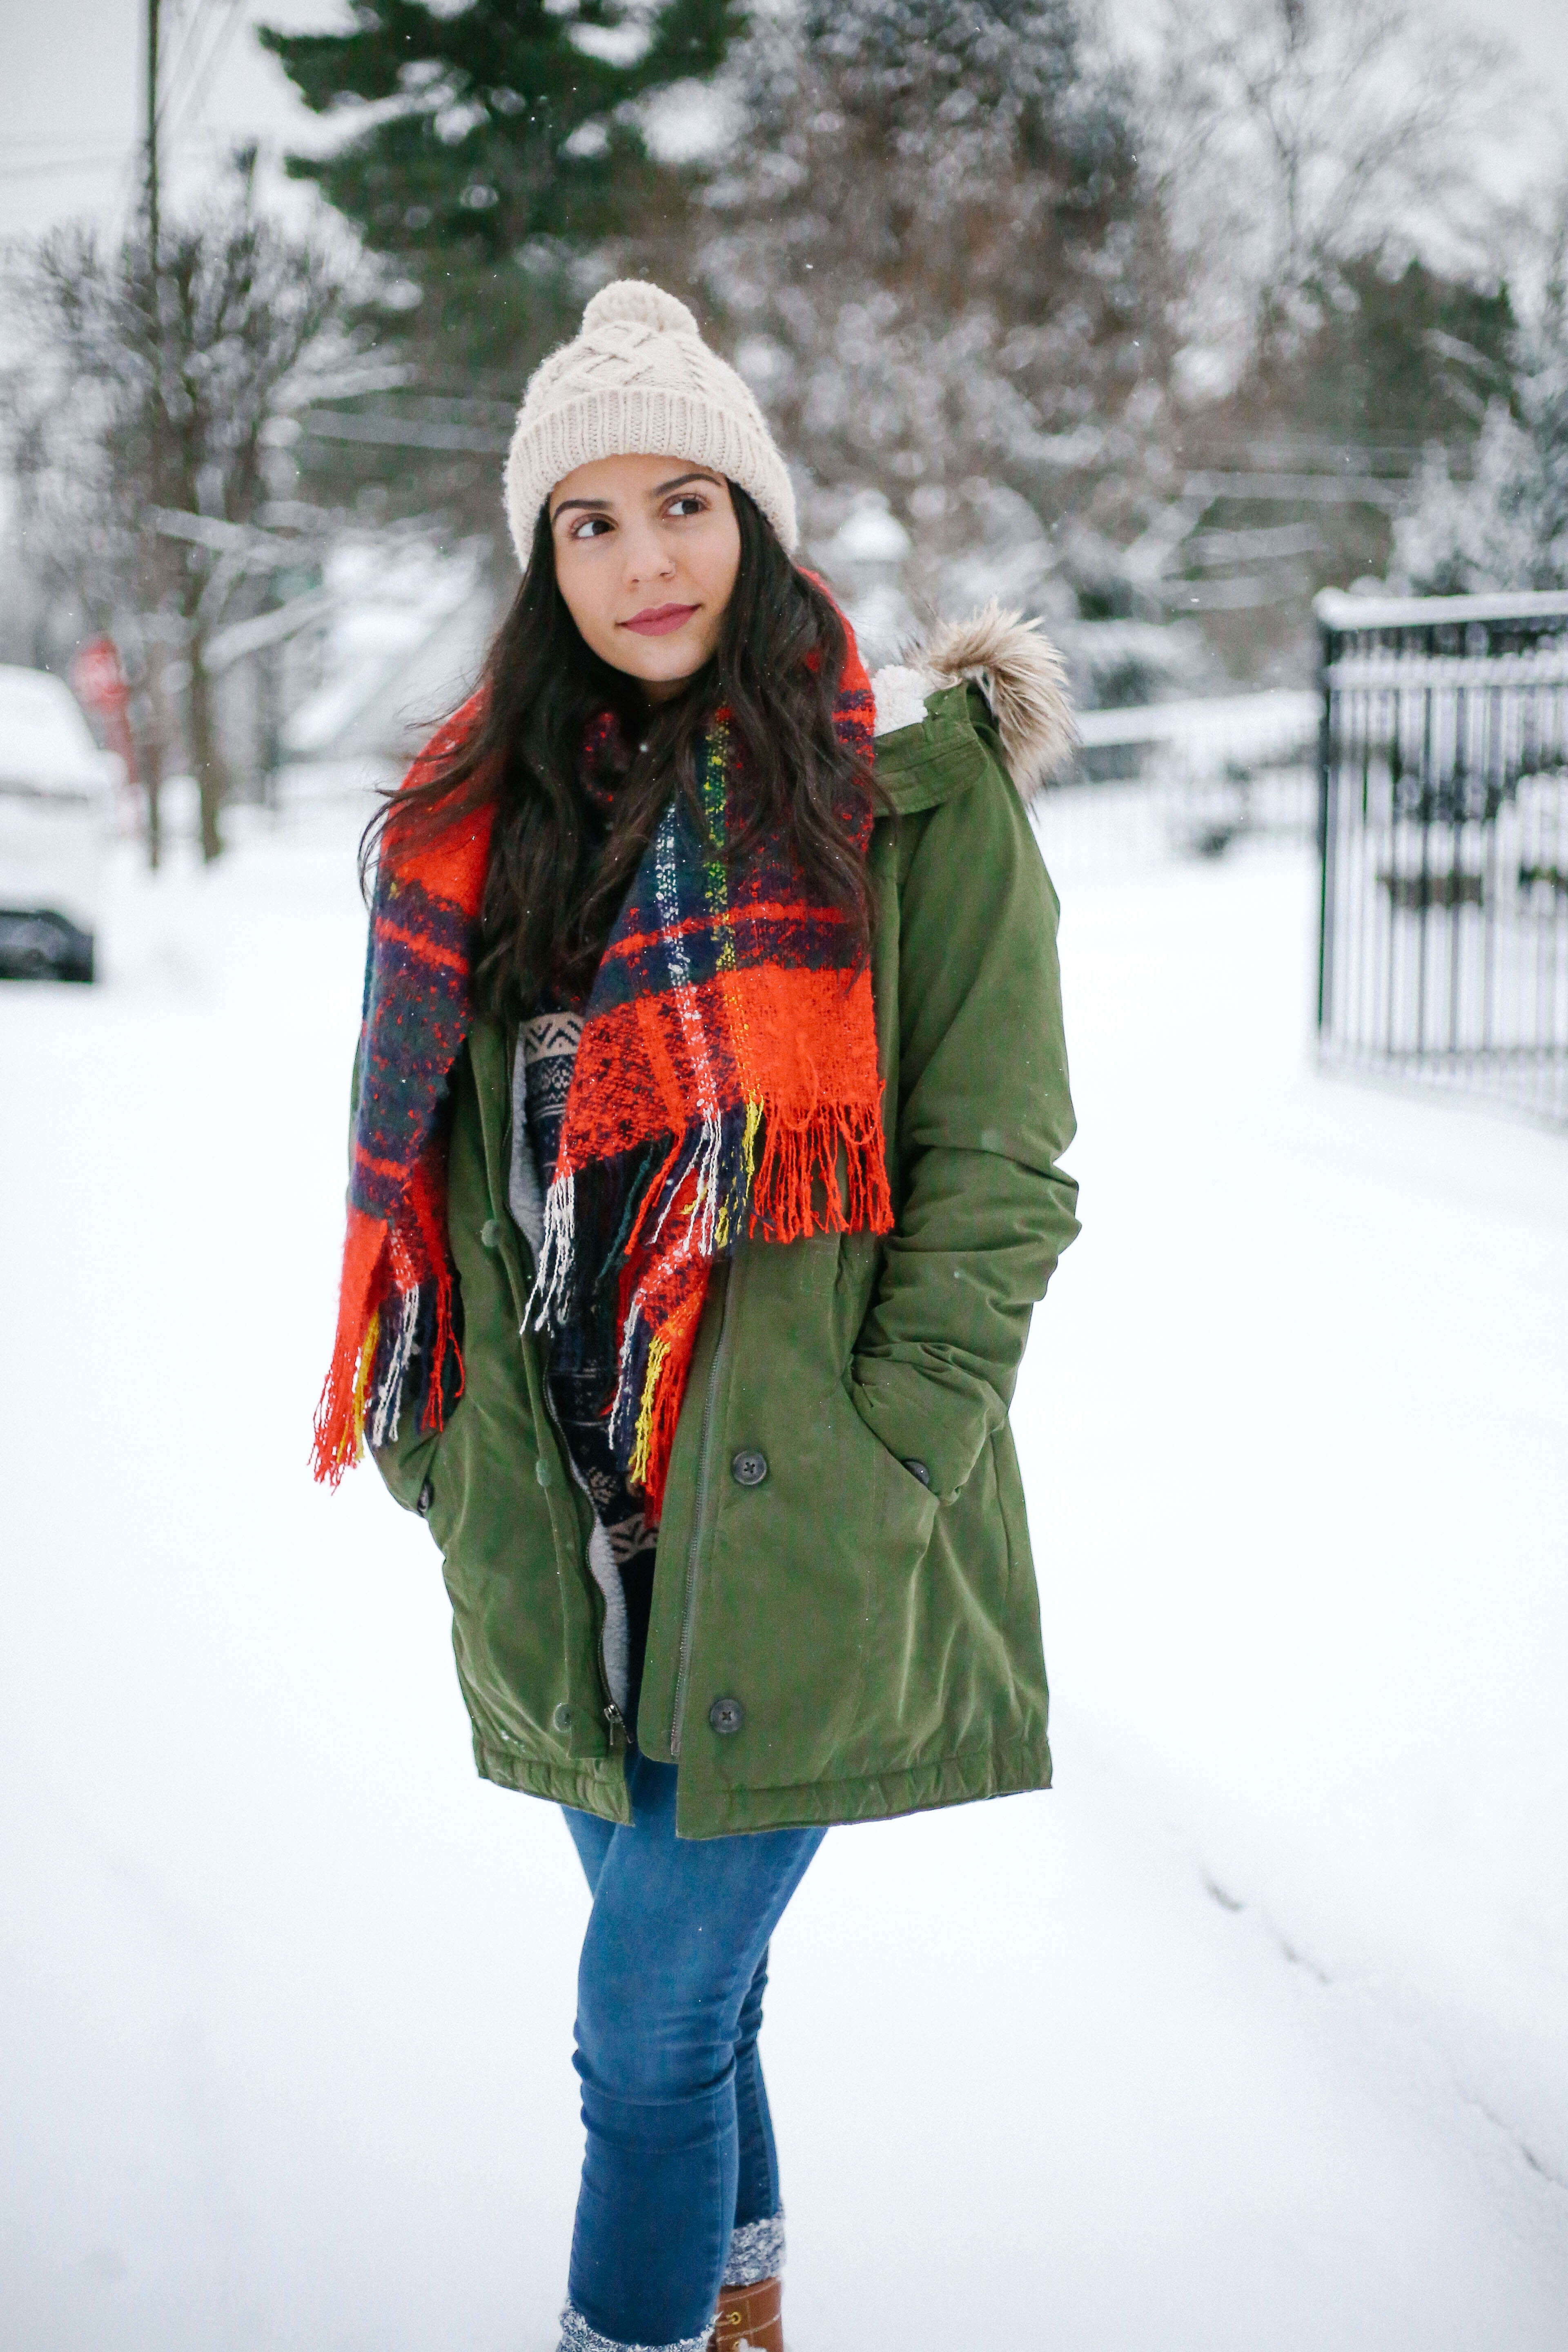 snow-day-parka-fashion-19